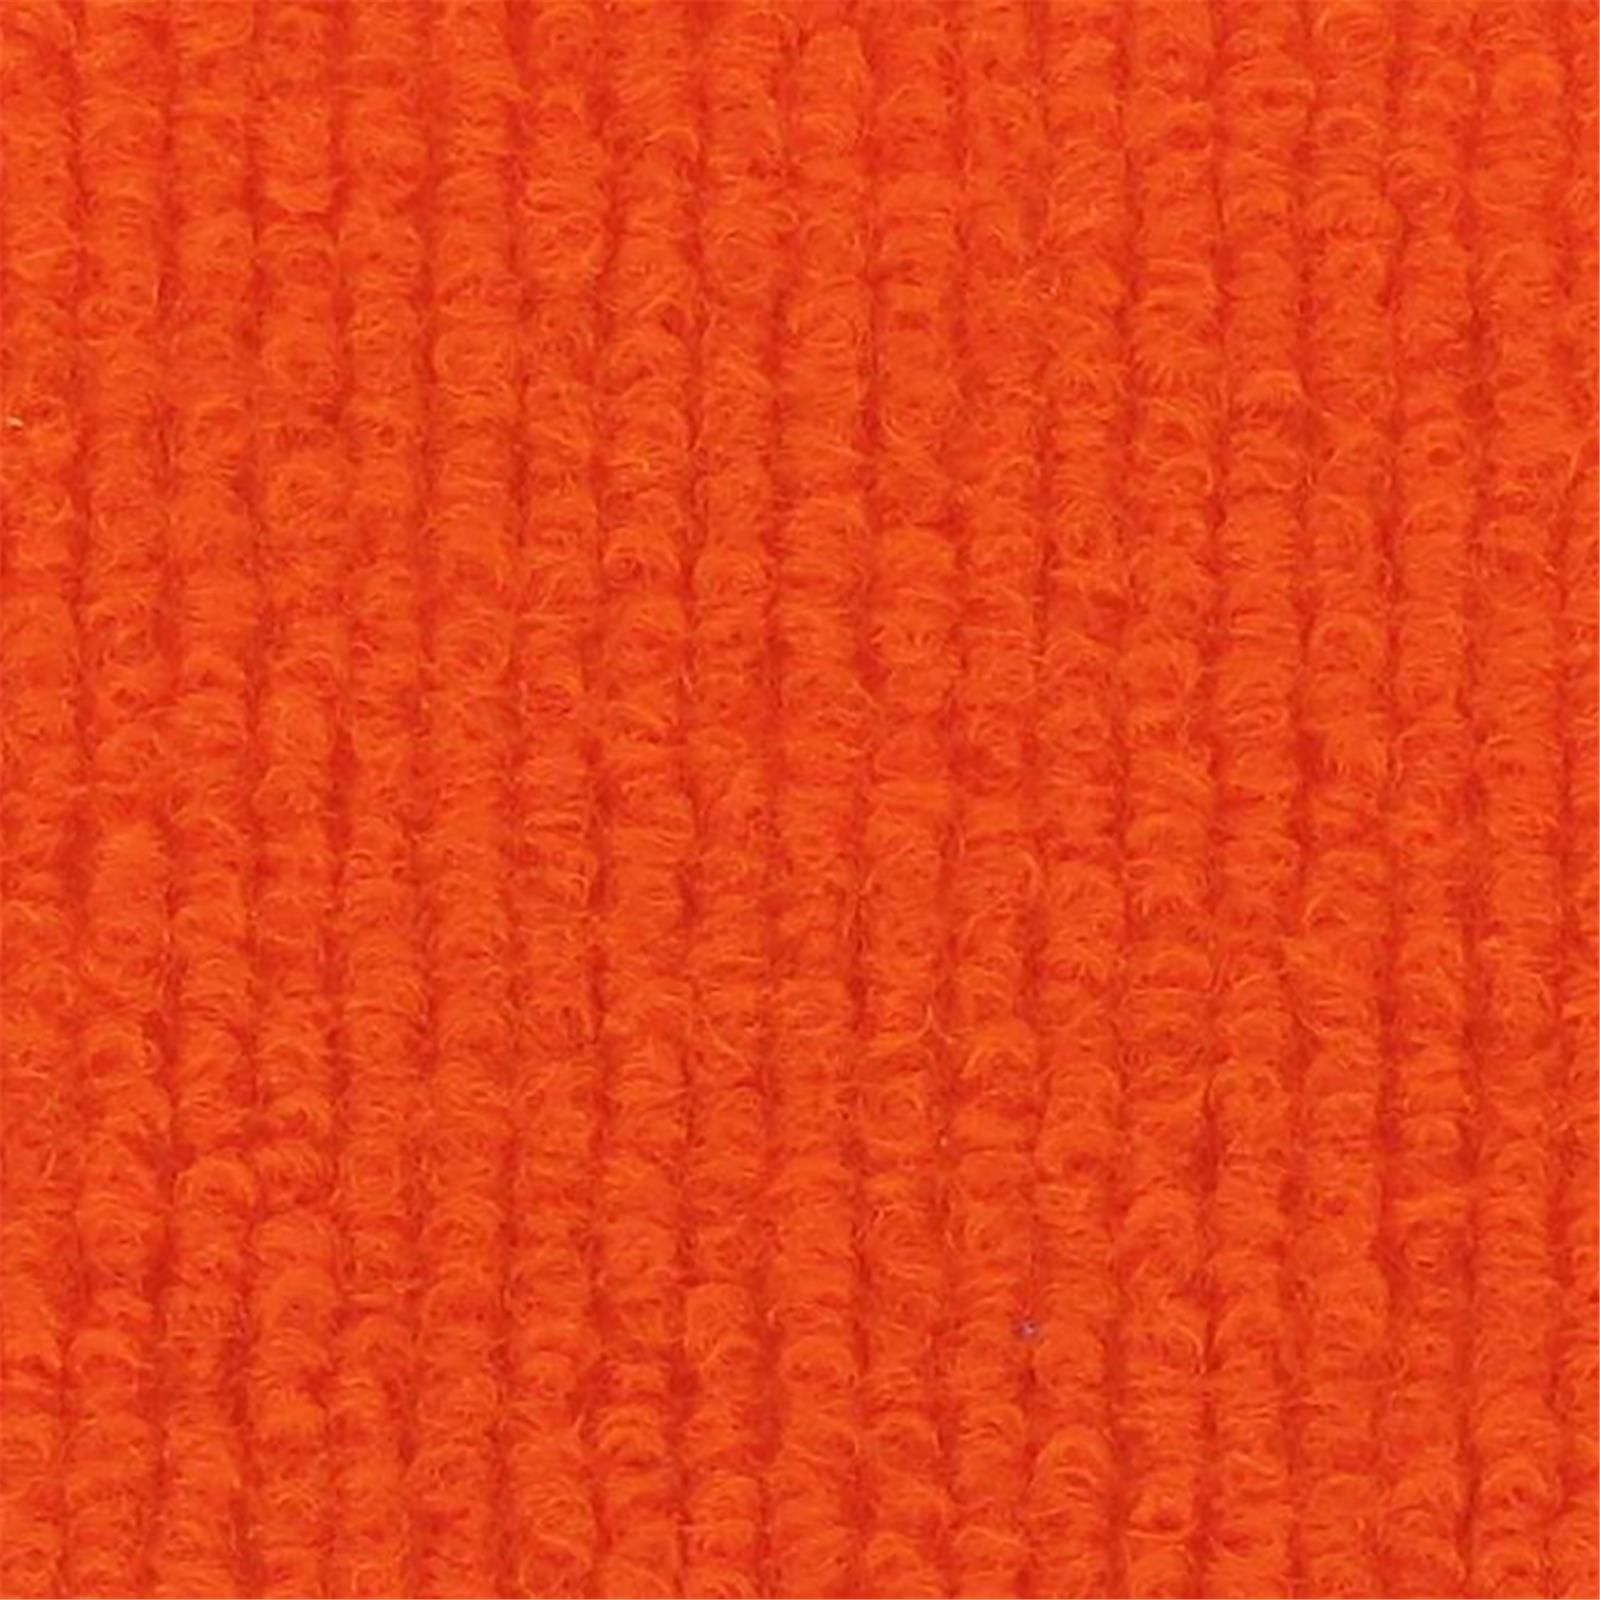 Messeboden Rips-Nadelvlies EXPOLINE Orange 0007 100 qm ohne Schutzfolie - Rollenbreite 200 cm